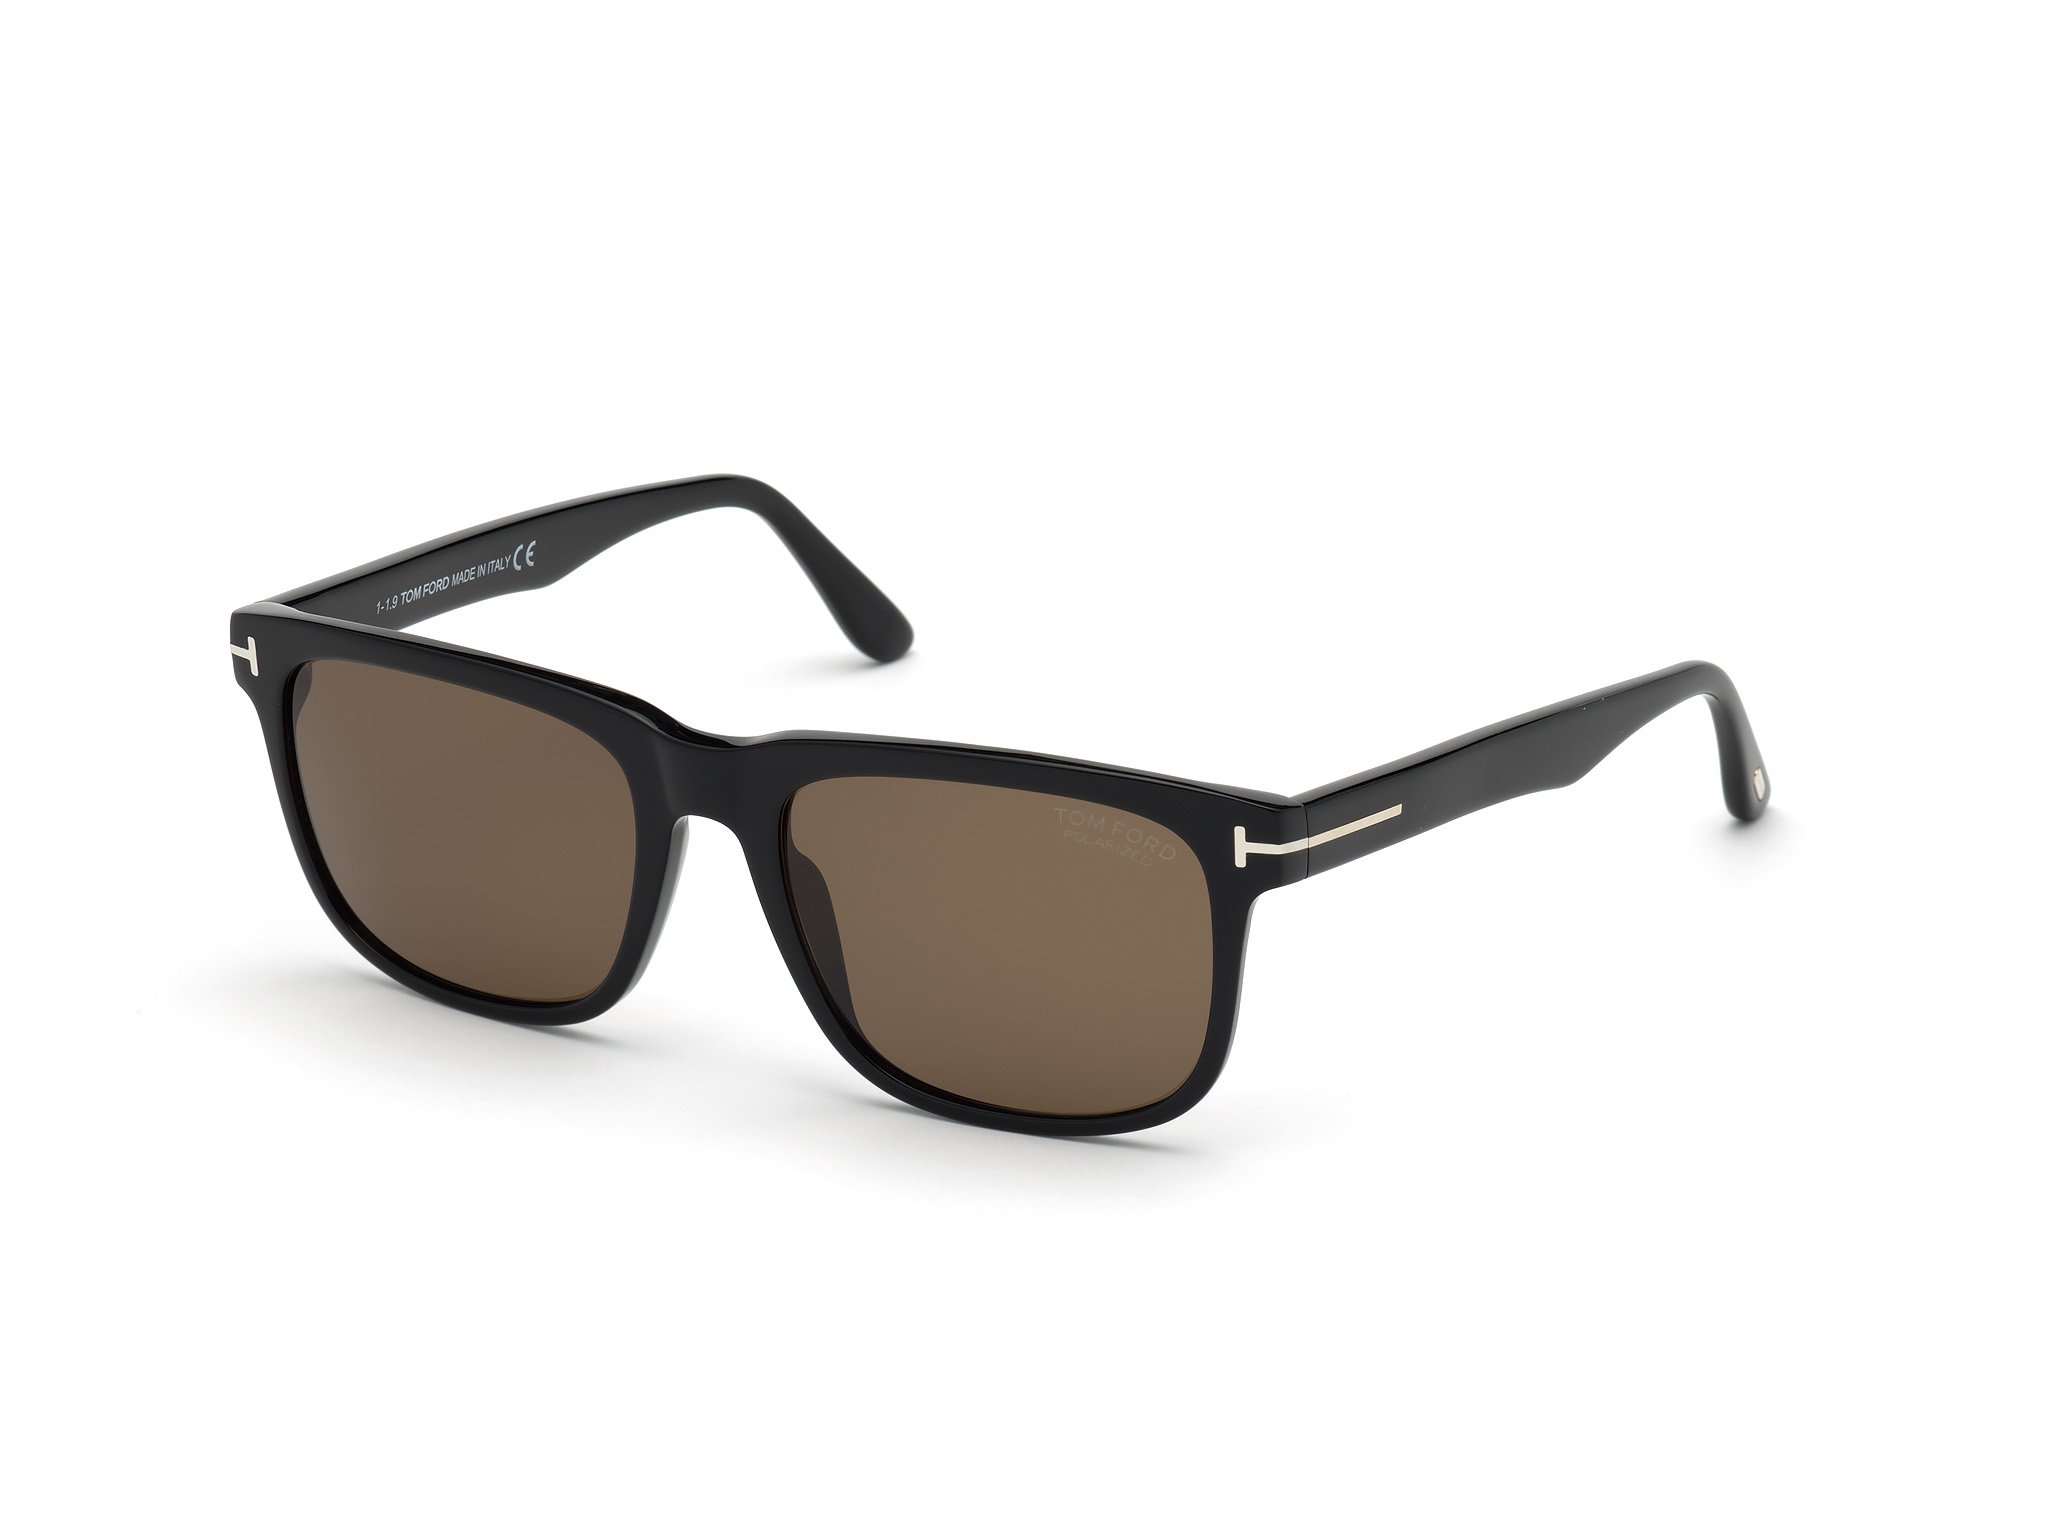 Das Bild zeigt die Sonnenbrille FT0775 01H von der Marke Tom Ford in schwarz.